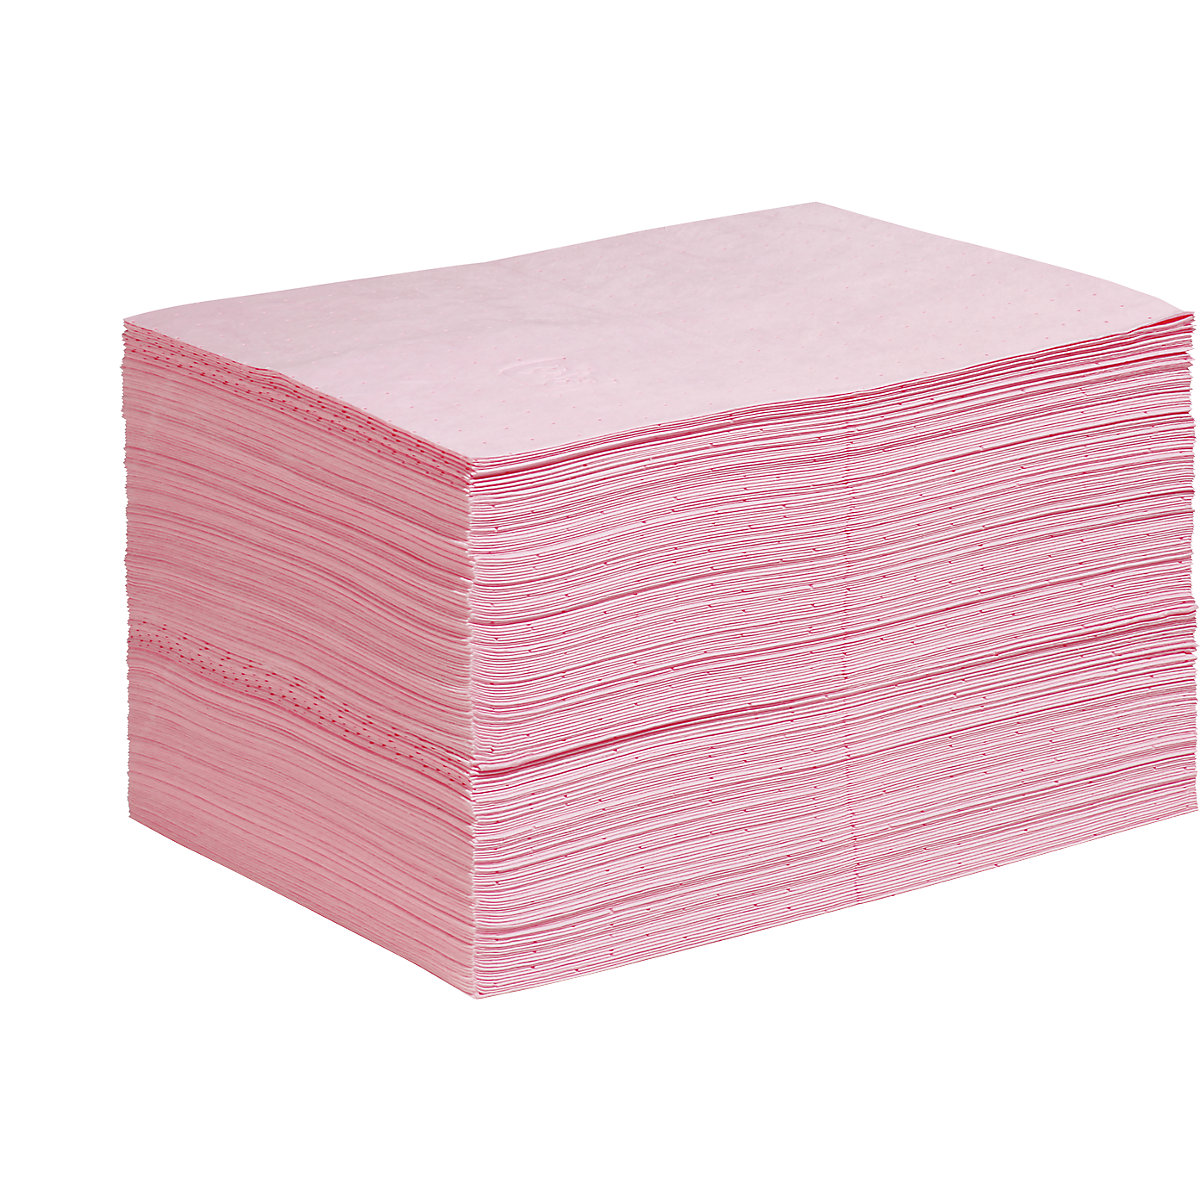 HazMat absorbent sheeting mat – PIG